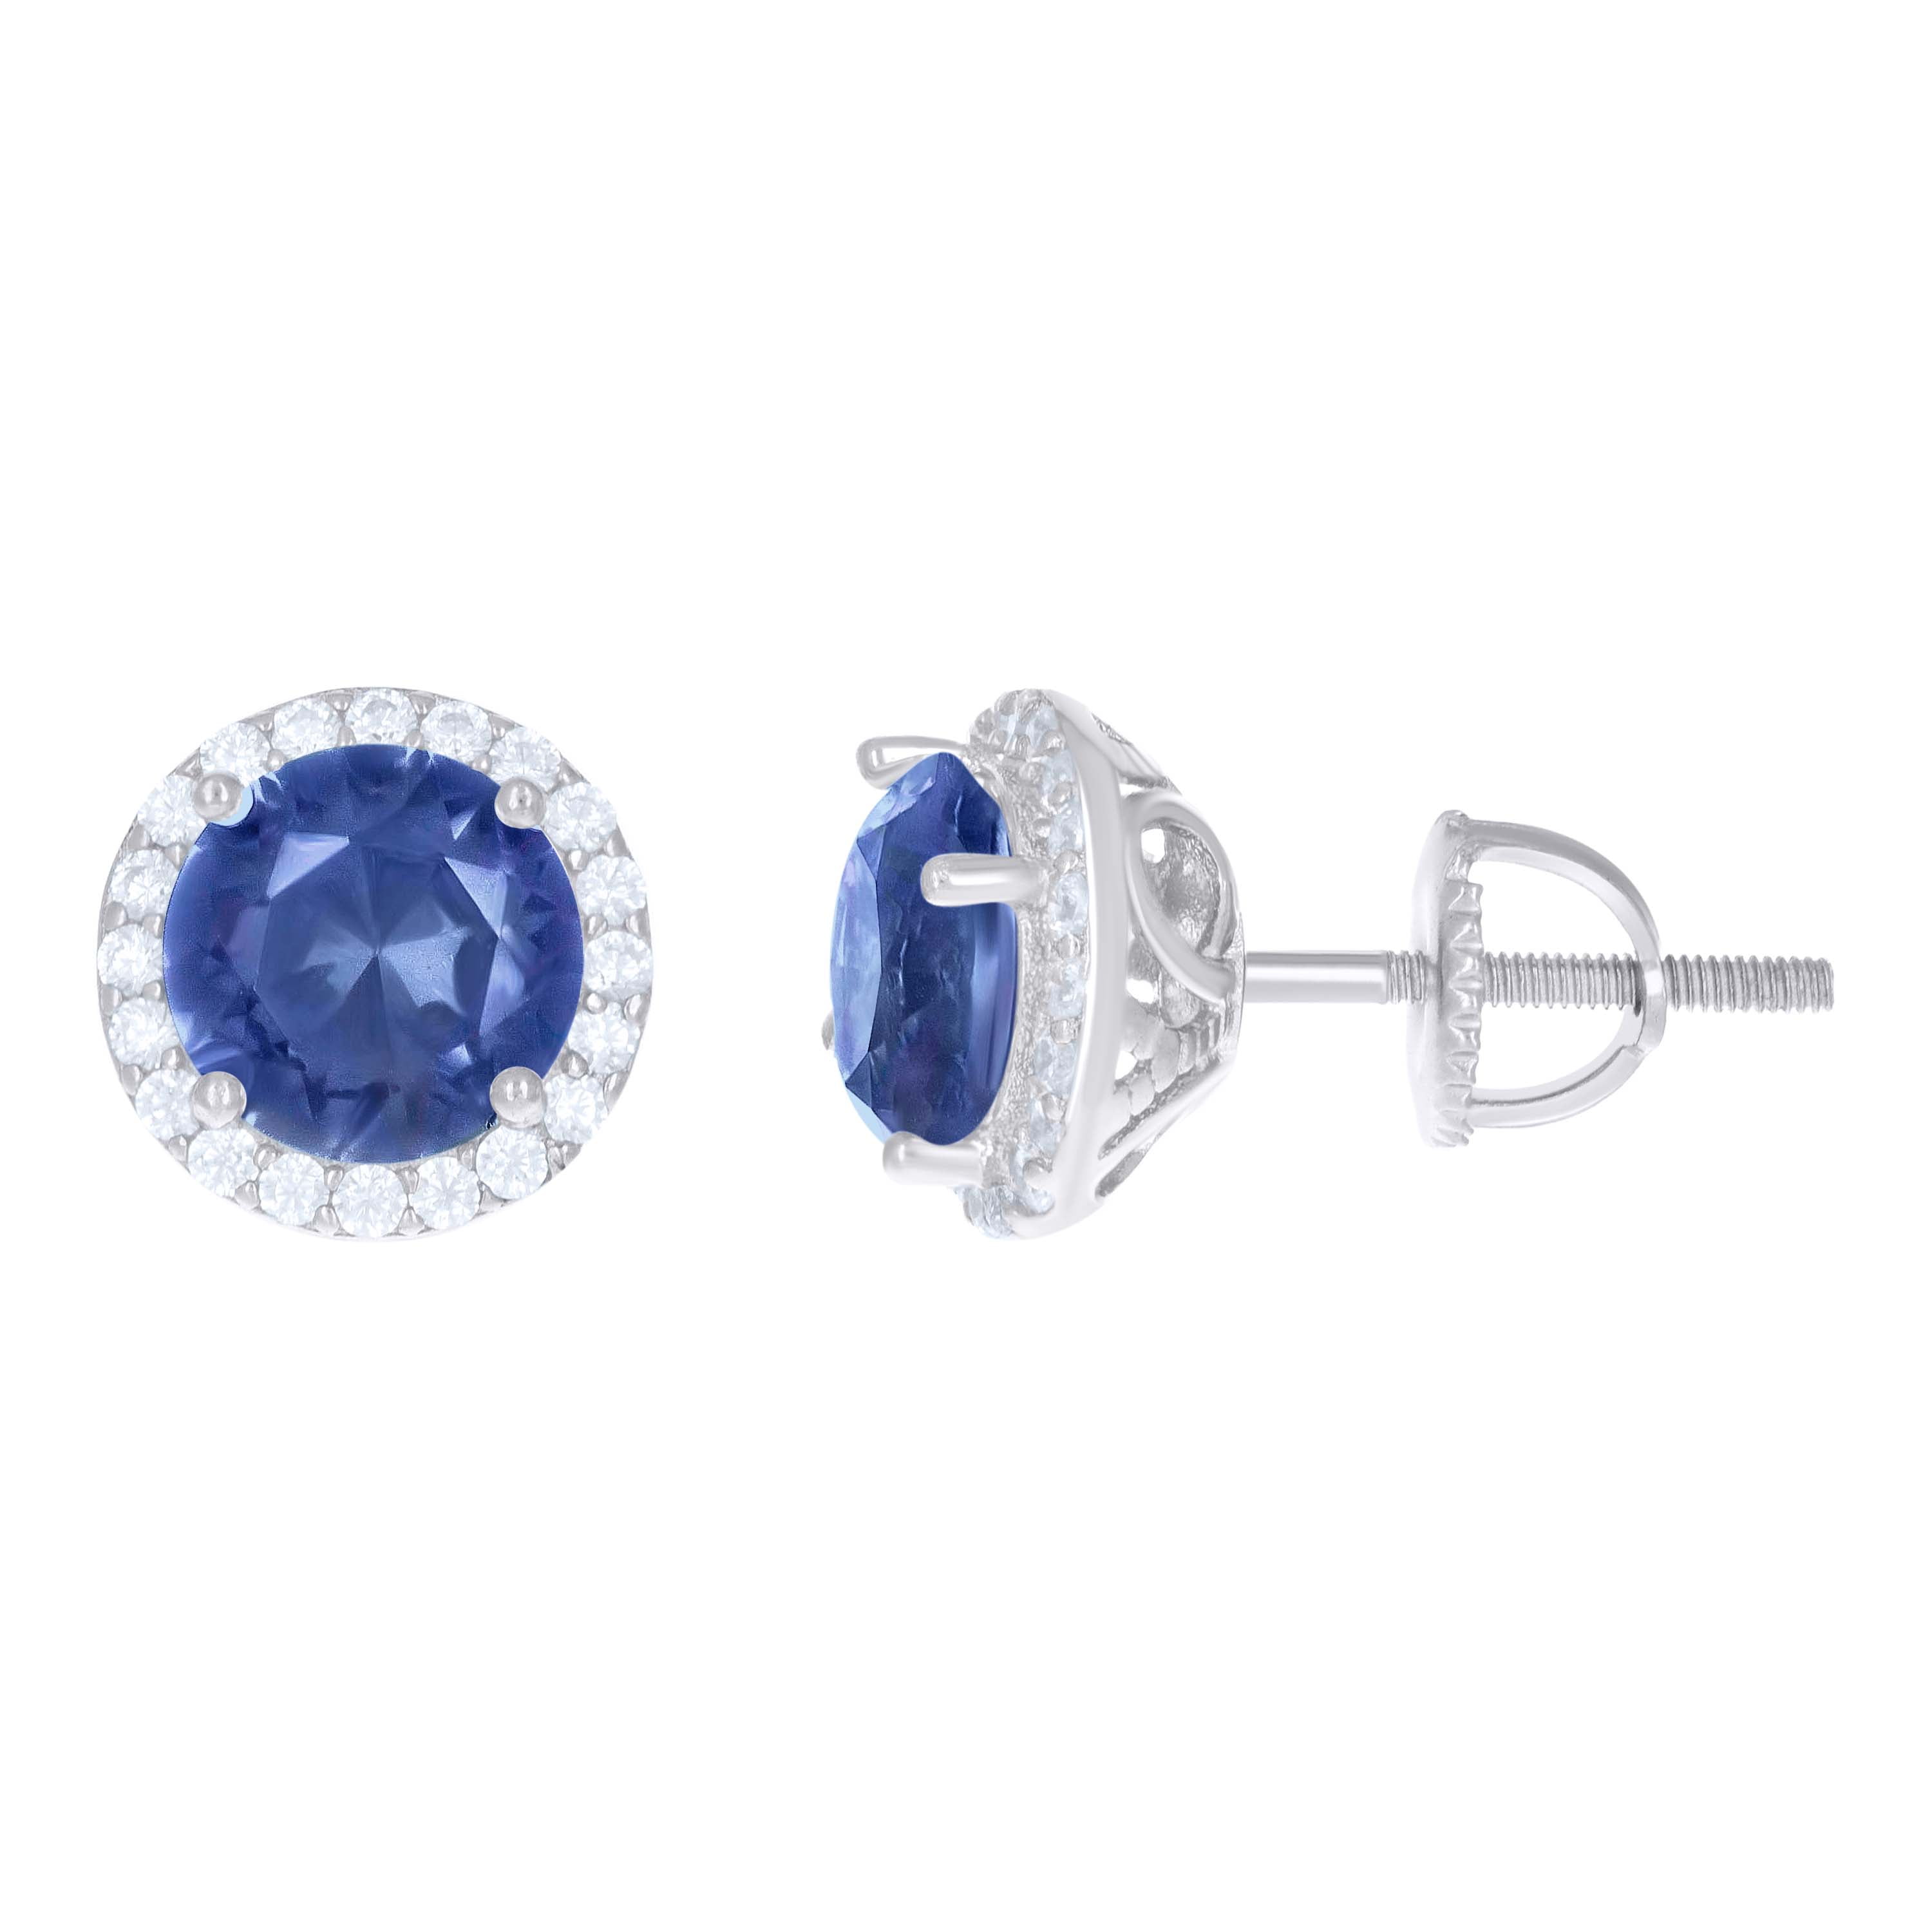 Navy Blue Stone Earrings – Vastrabharana